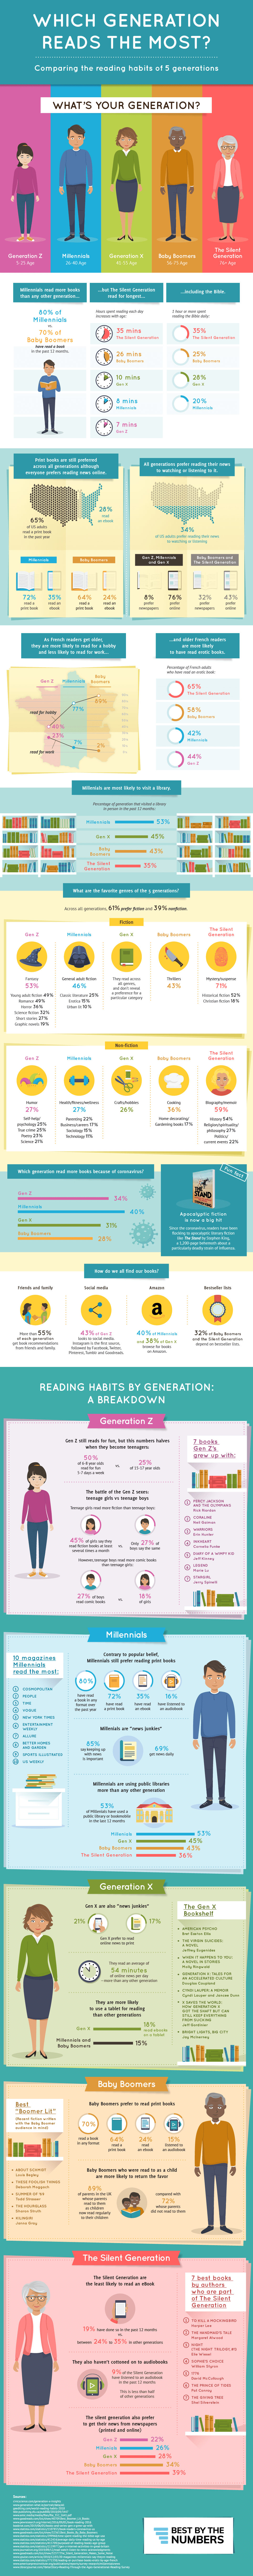 Infografía hábitos de lectura por generaciones